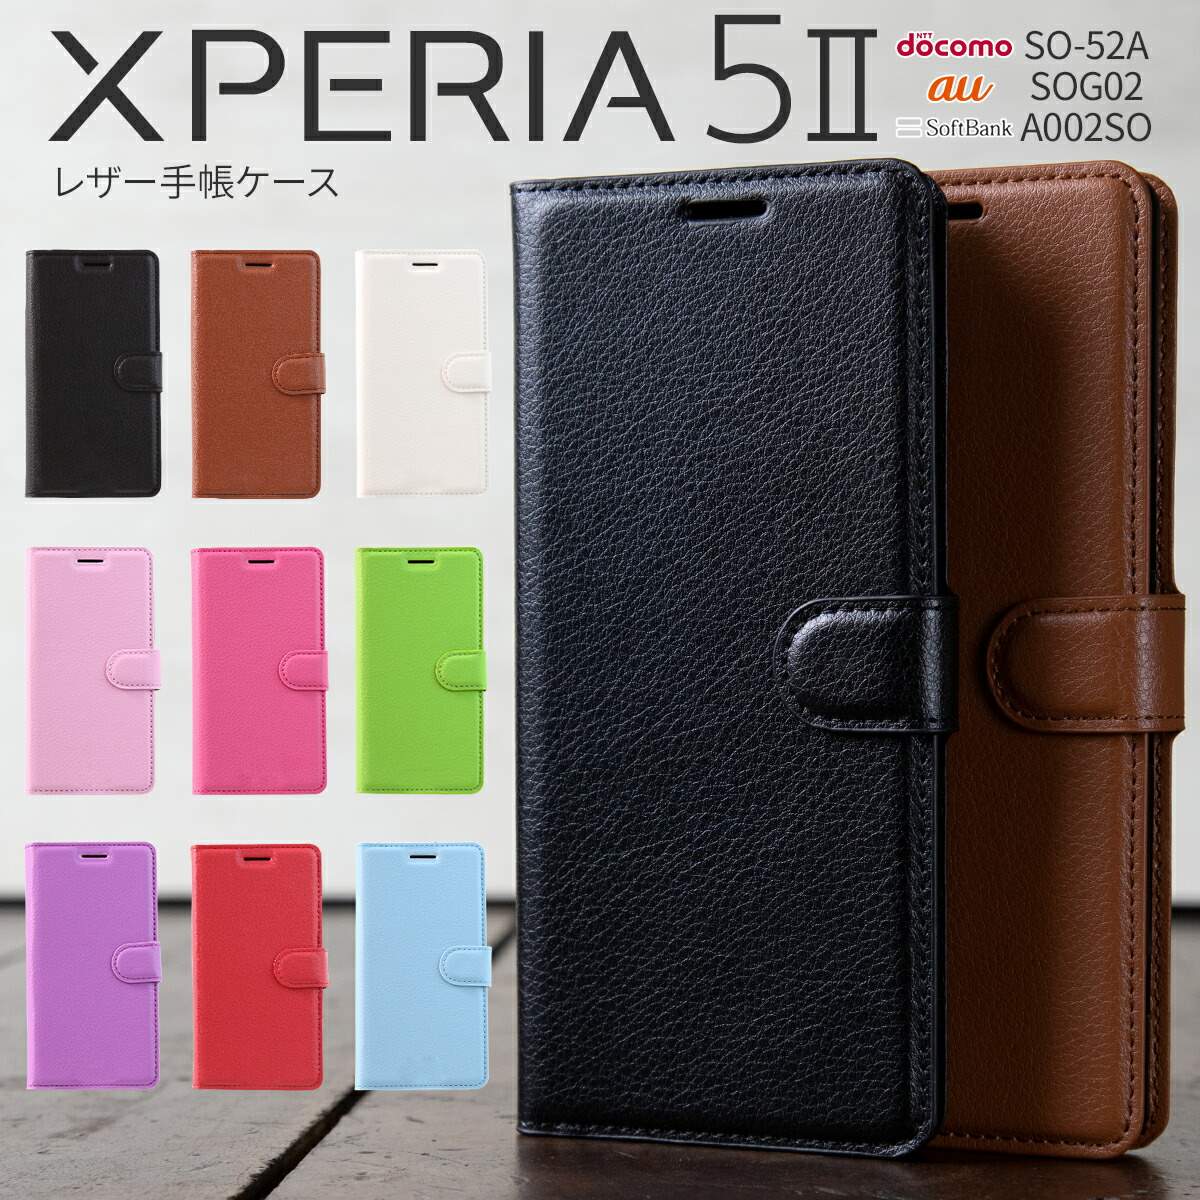 【最大30 OFFクーポン】 Xperia 5 II カバー 手帳型 スマホケース 韓国 ケース エクスペリア スマホカバー かっこいい おしゃれ 人気 おすすめ レザー 革 SO-52A SOG02 A002SO レザー手帳型ケース ヴィーガンレザー sale 携帯ケース 携帯カバー